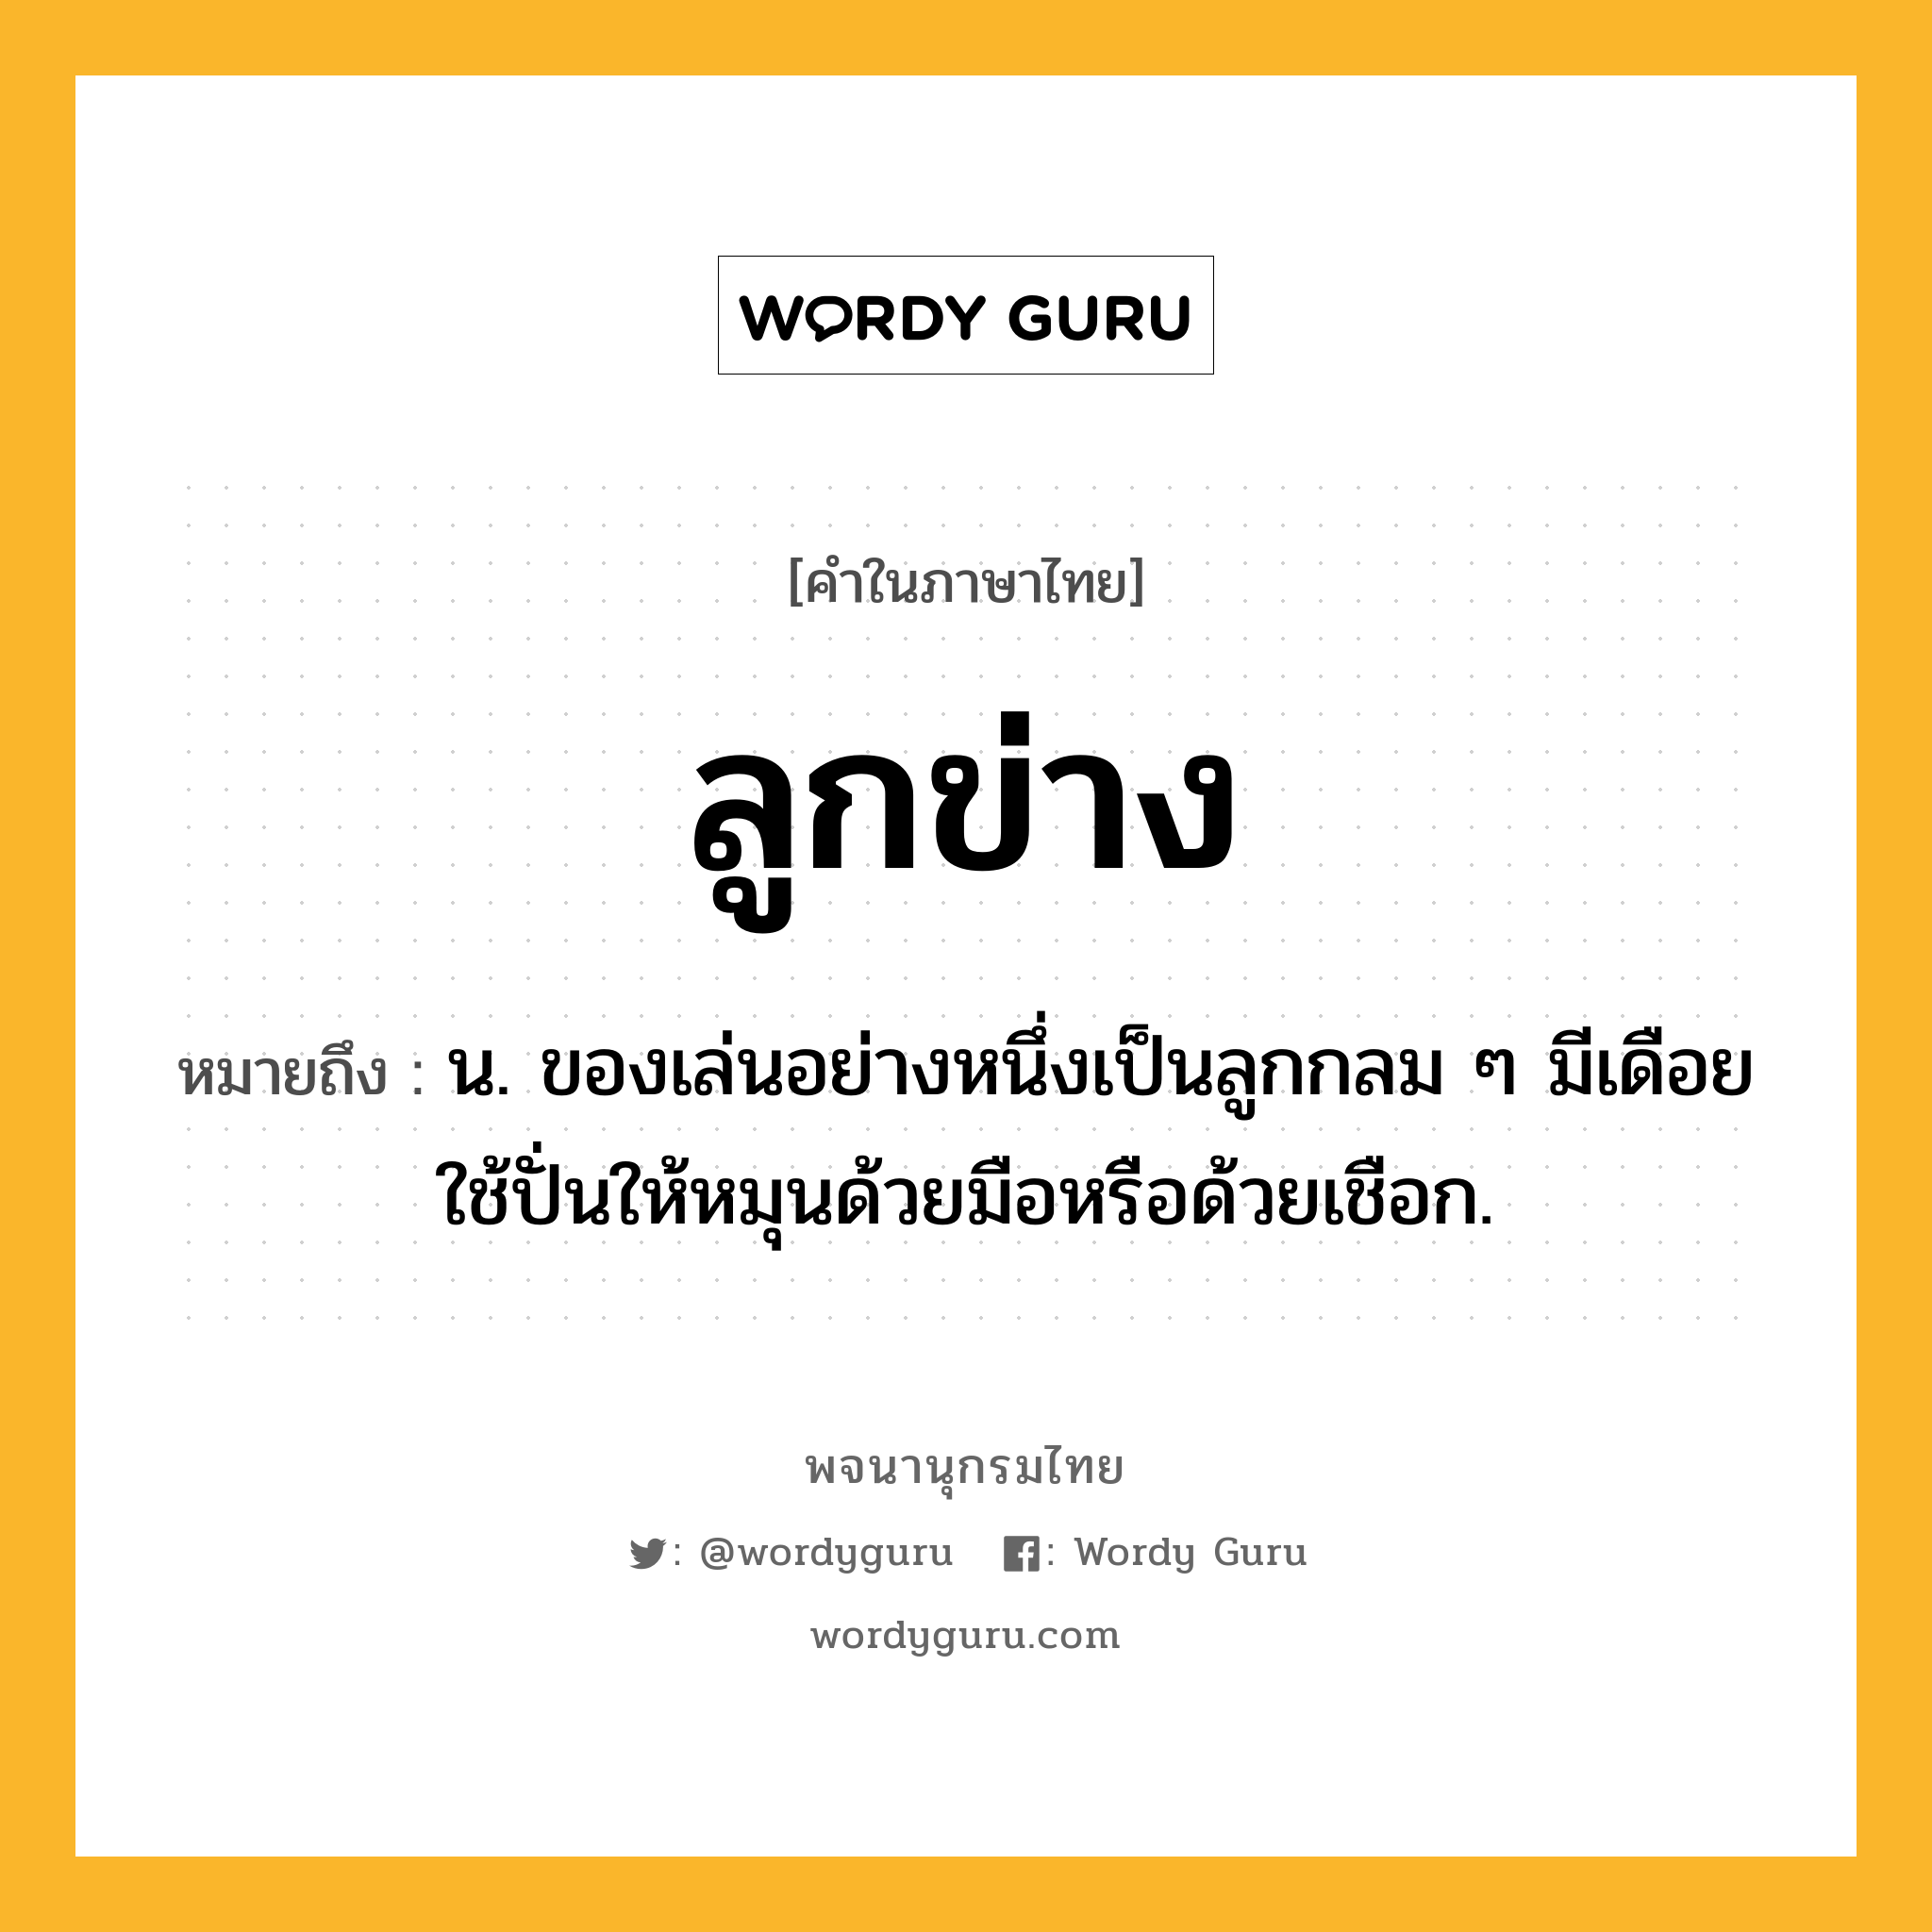 ลูกข่าง หมายถึงอะไร?, คำในภาษาไทย ลูกข่าง หมายถึง น. ของเล่นอย่างหนึ่งเป็นลูกกลม ๆ มีเดือยใช้ปั่นให้หมุนด้วยมือหรือด้วยเชือก.